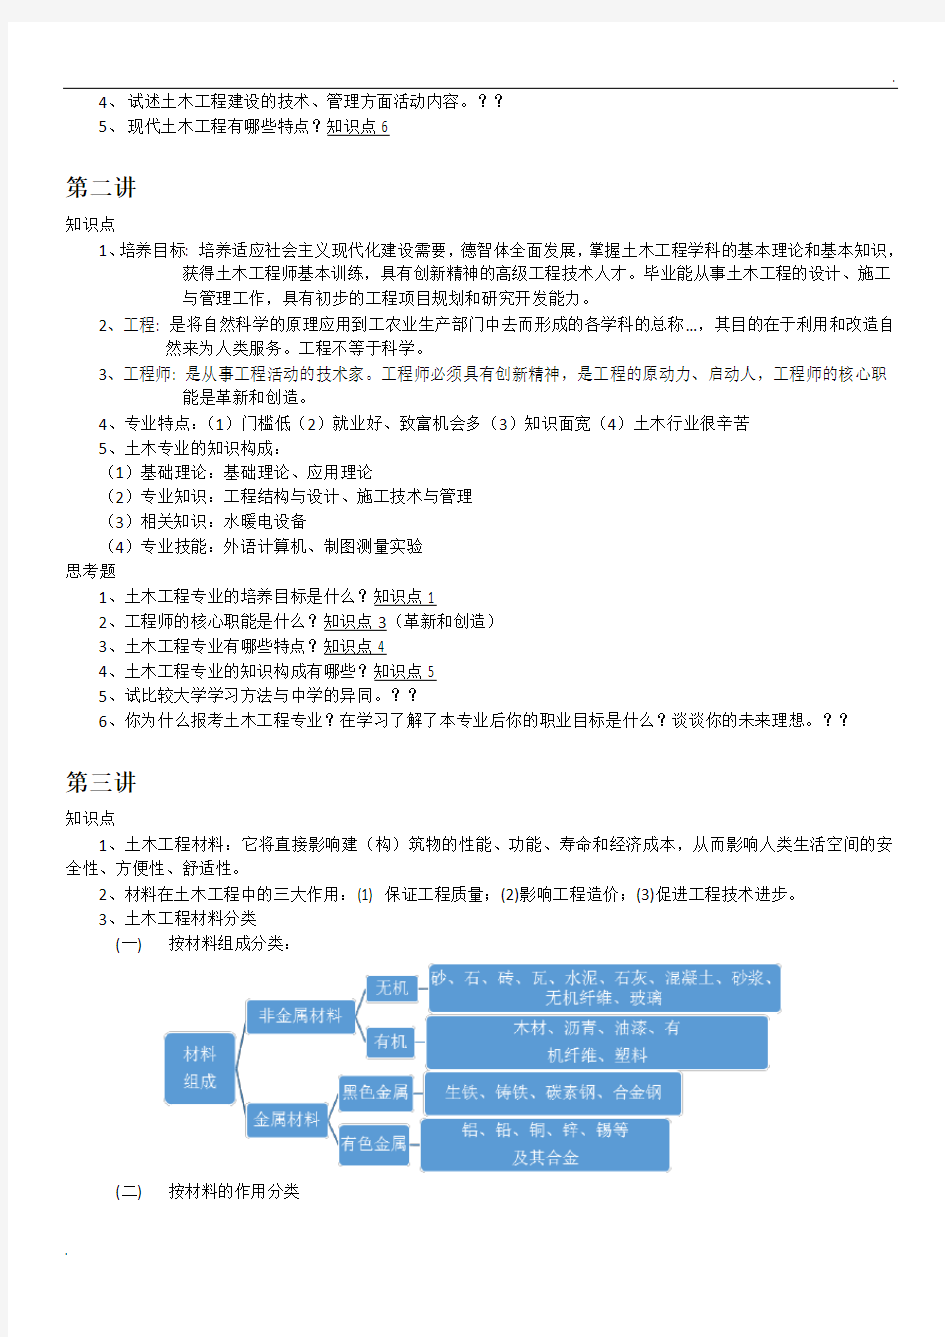 中国石油大学(华东)32学时土木工程概论知识点总结